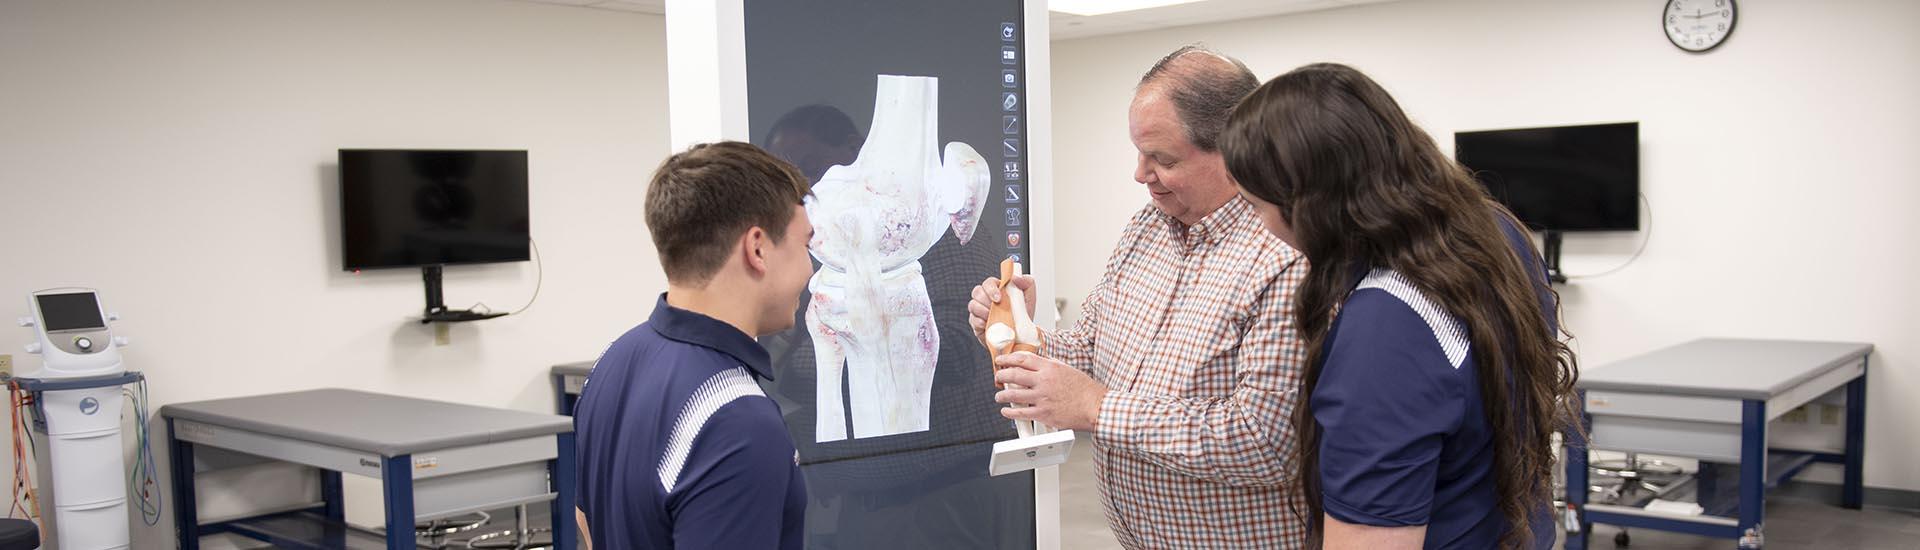 教授和两名运动训练学生在实验室检查人体膝关节模型.